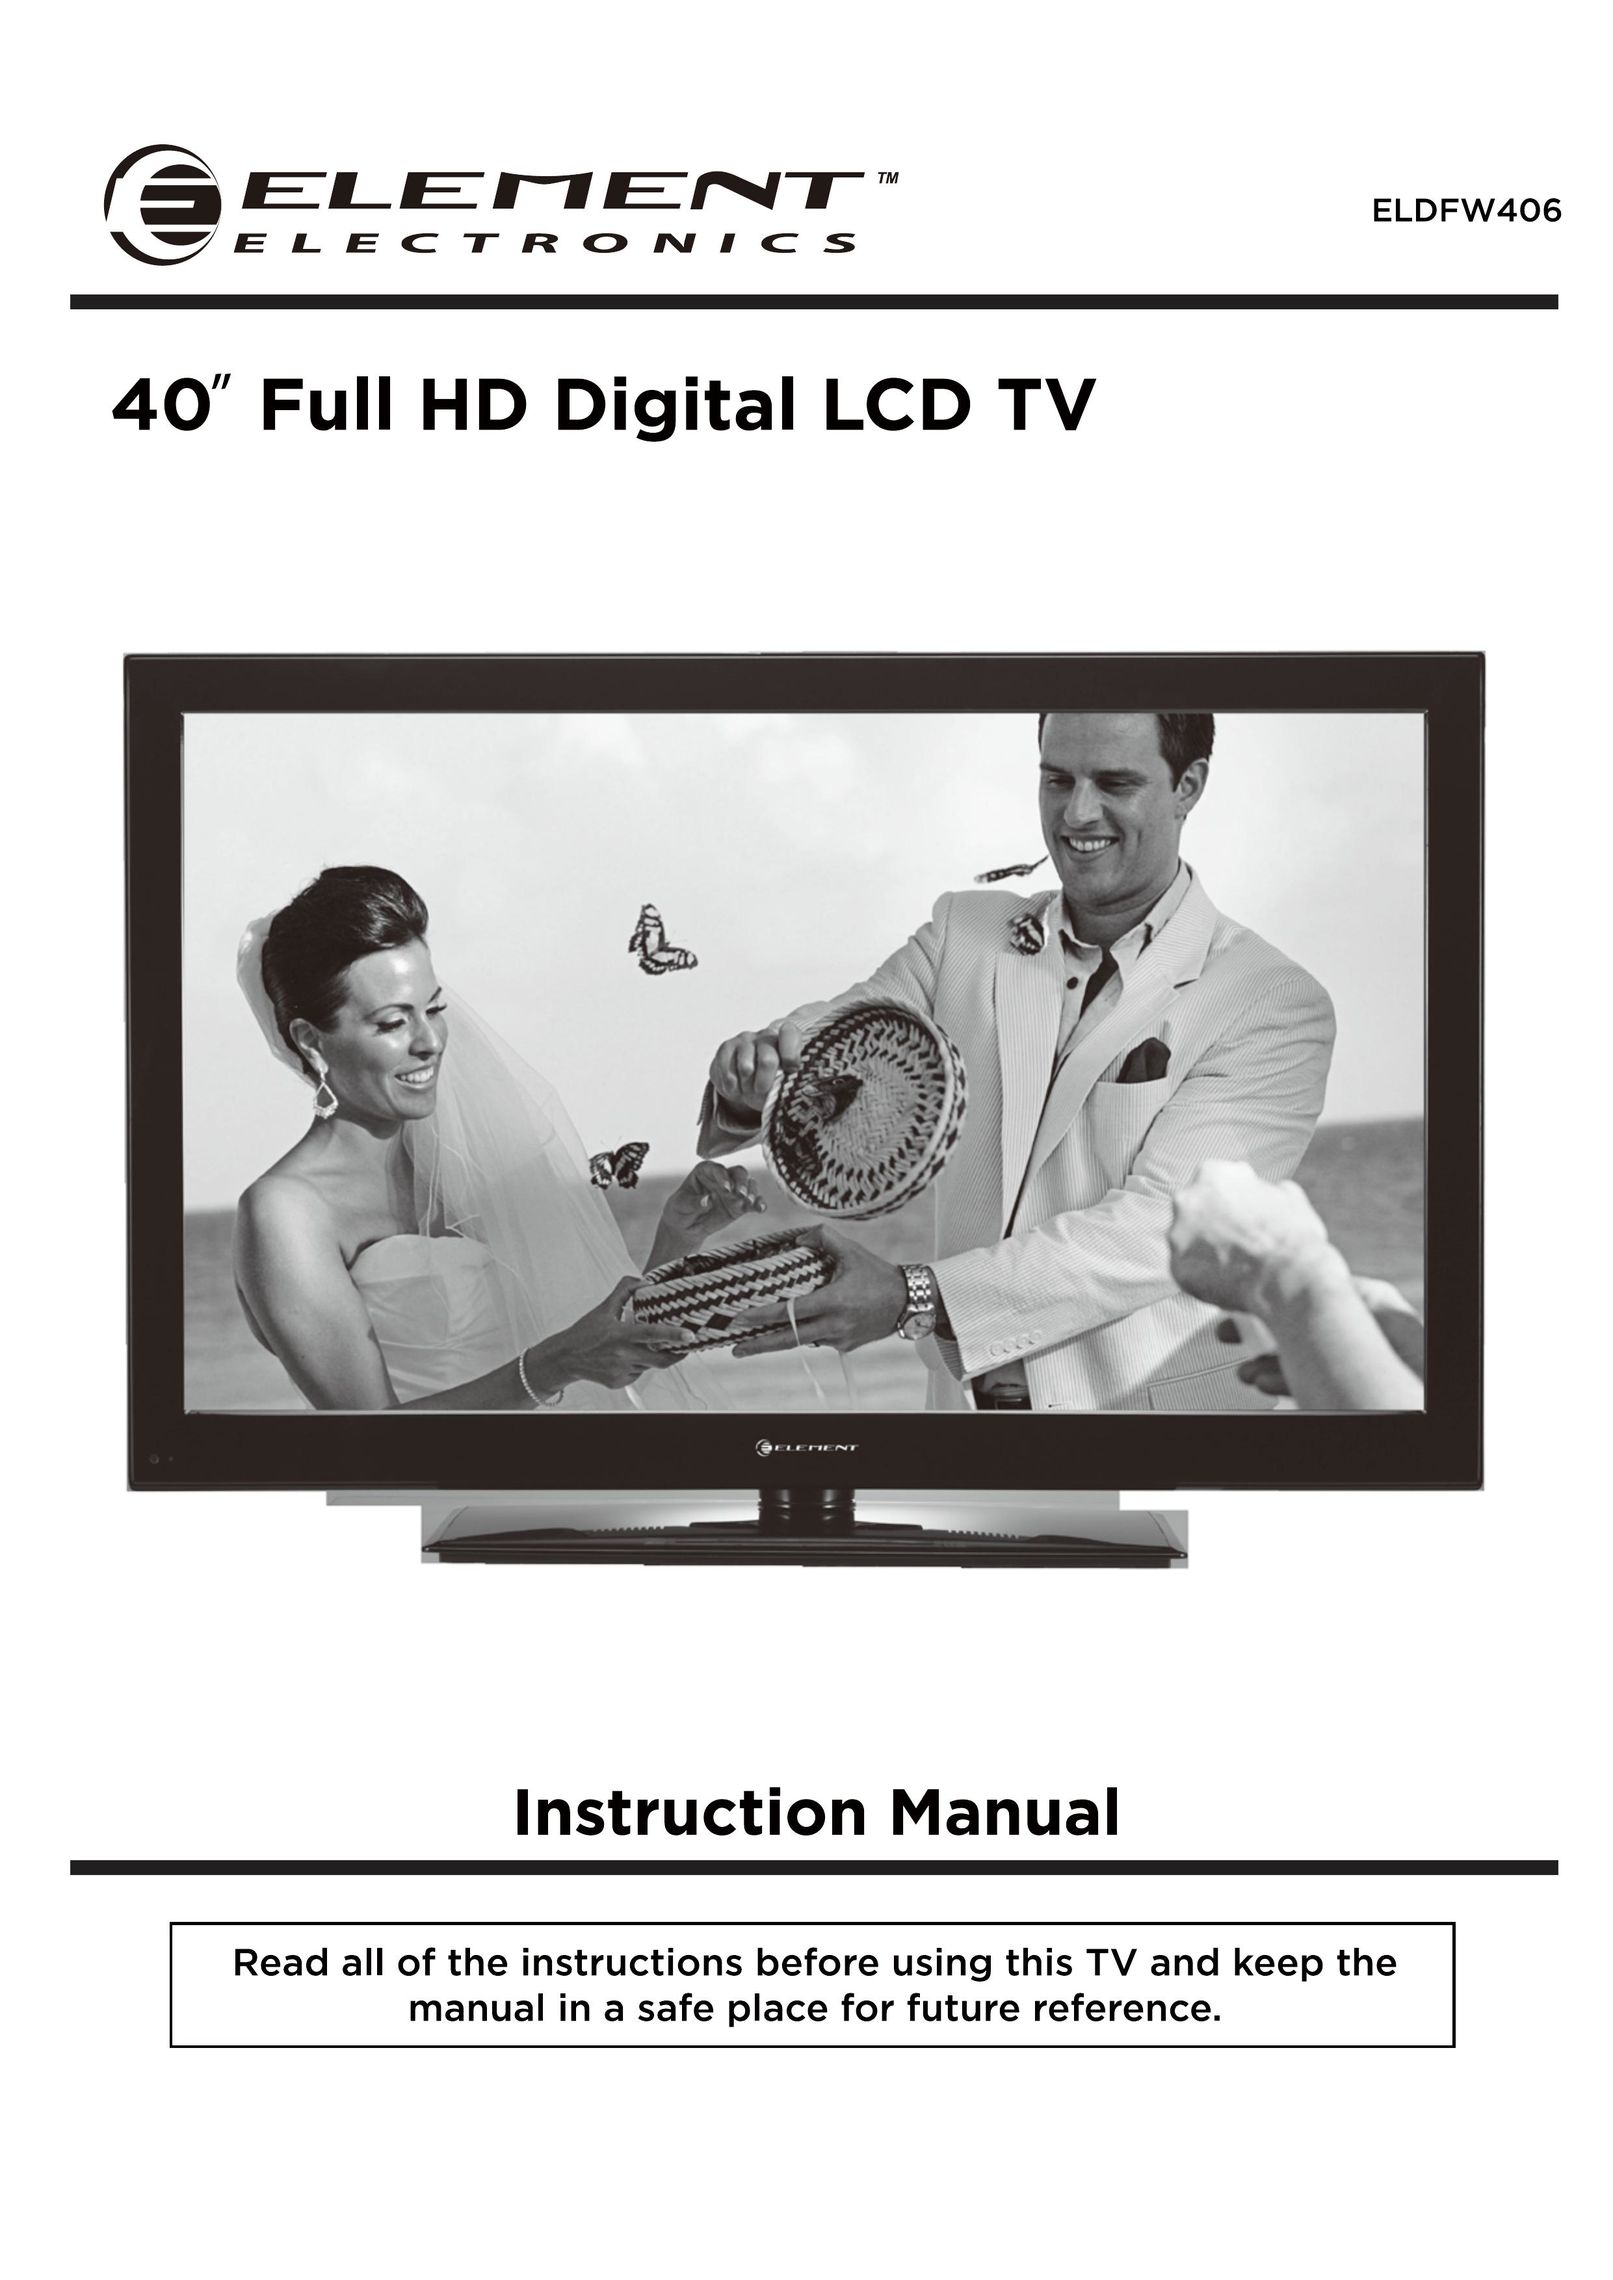 Element Electronics ELDFW406 Flat Panel Television User Manual